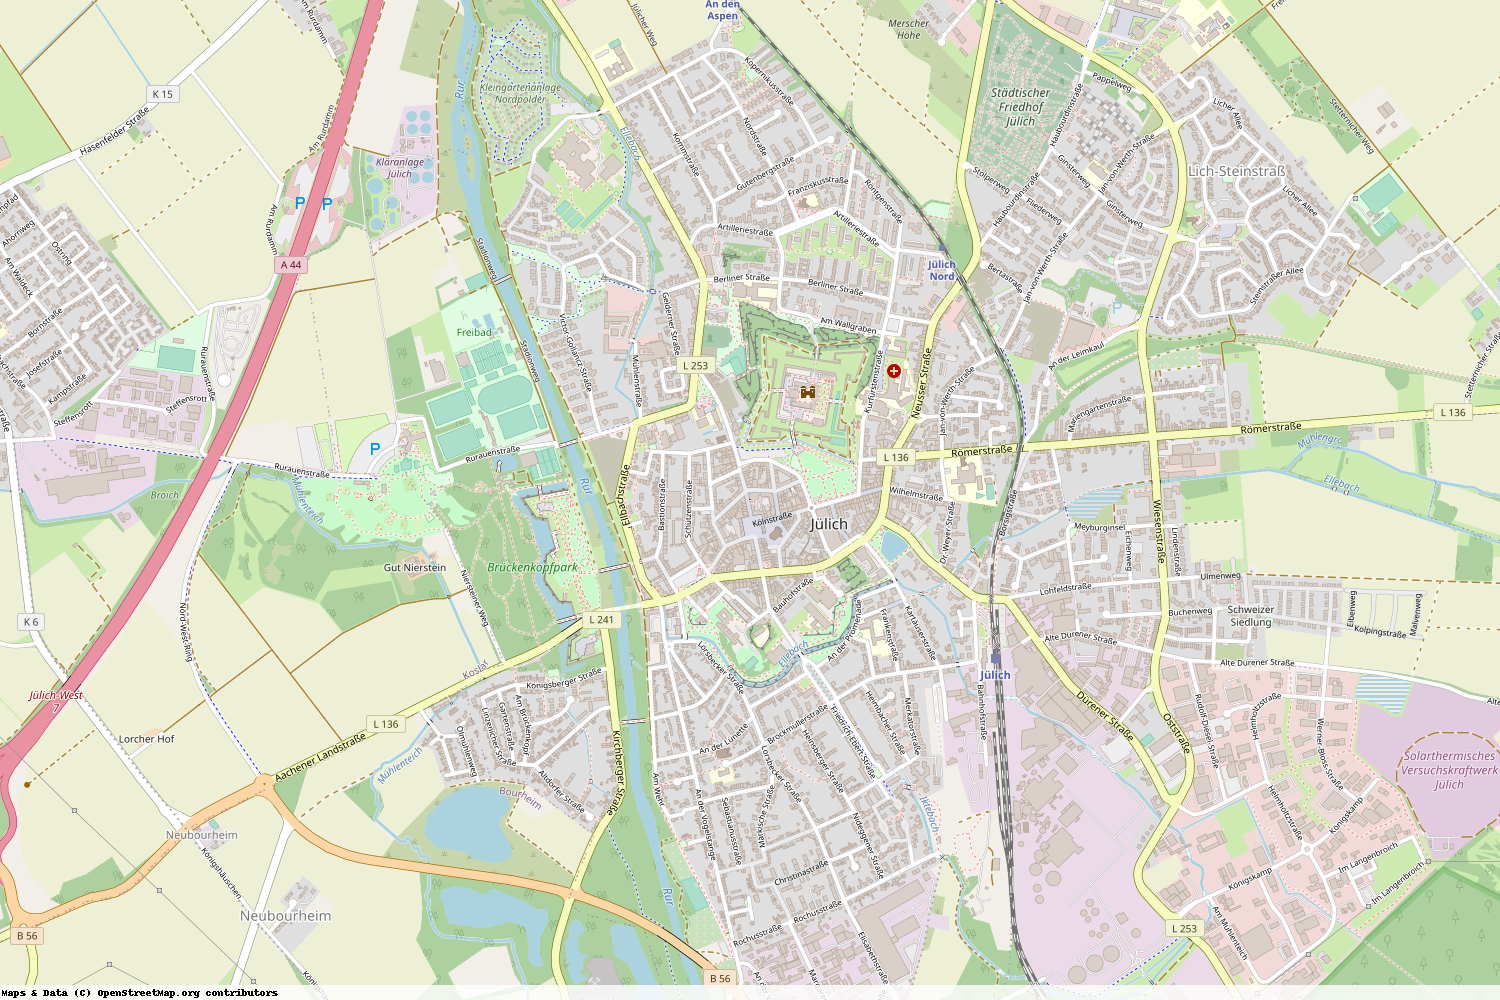 Ist gerade Stromausfall in Nordrhein-Westfalen - Düren - Jülich?